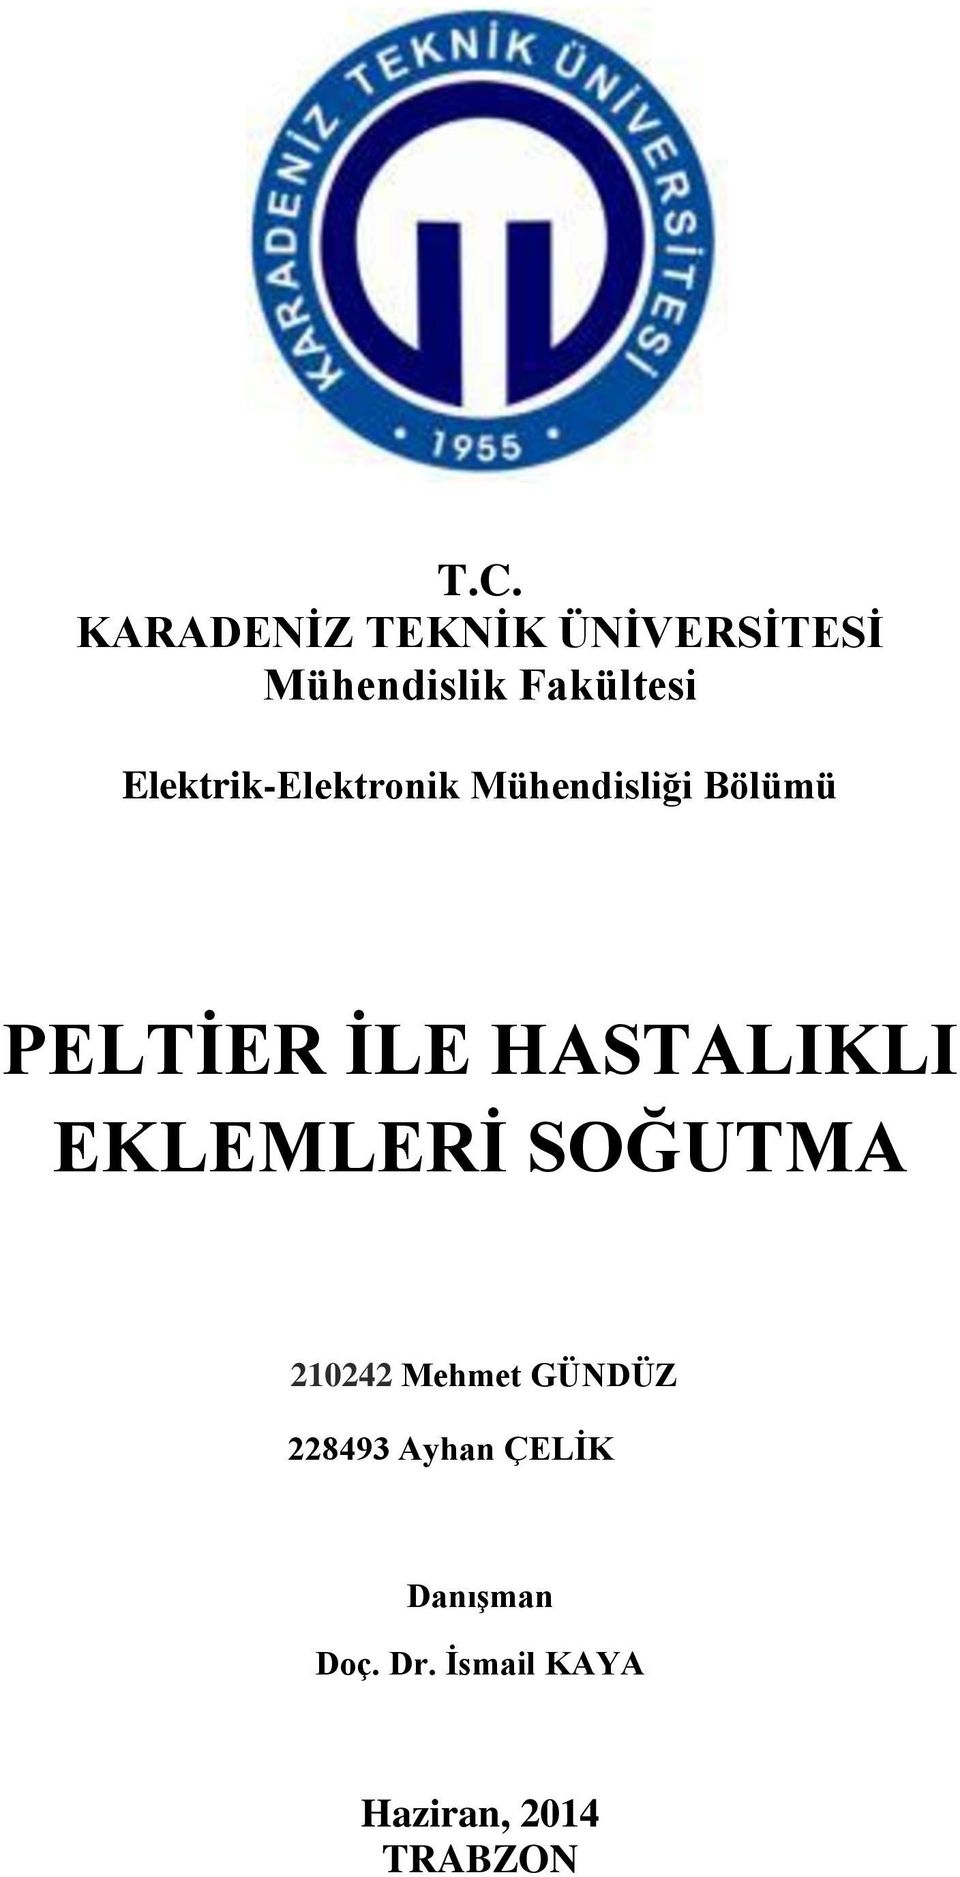 HSTLIKLI EKLEMLERİ SOĞUTM 210242 Mehmet GÜNDÜZ 228493